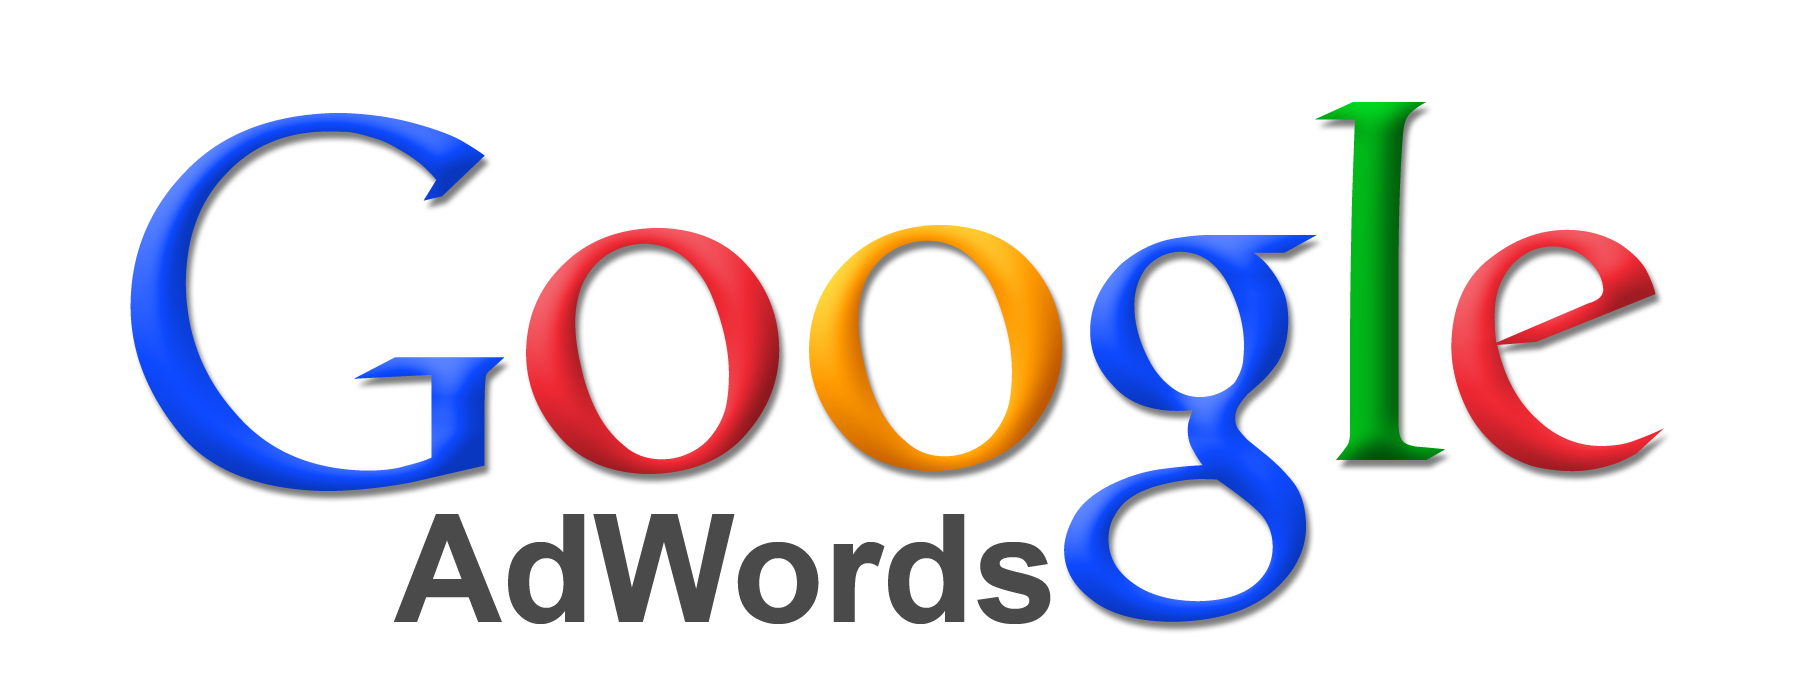 googleadwords.png